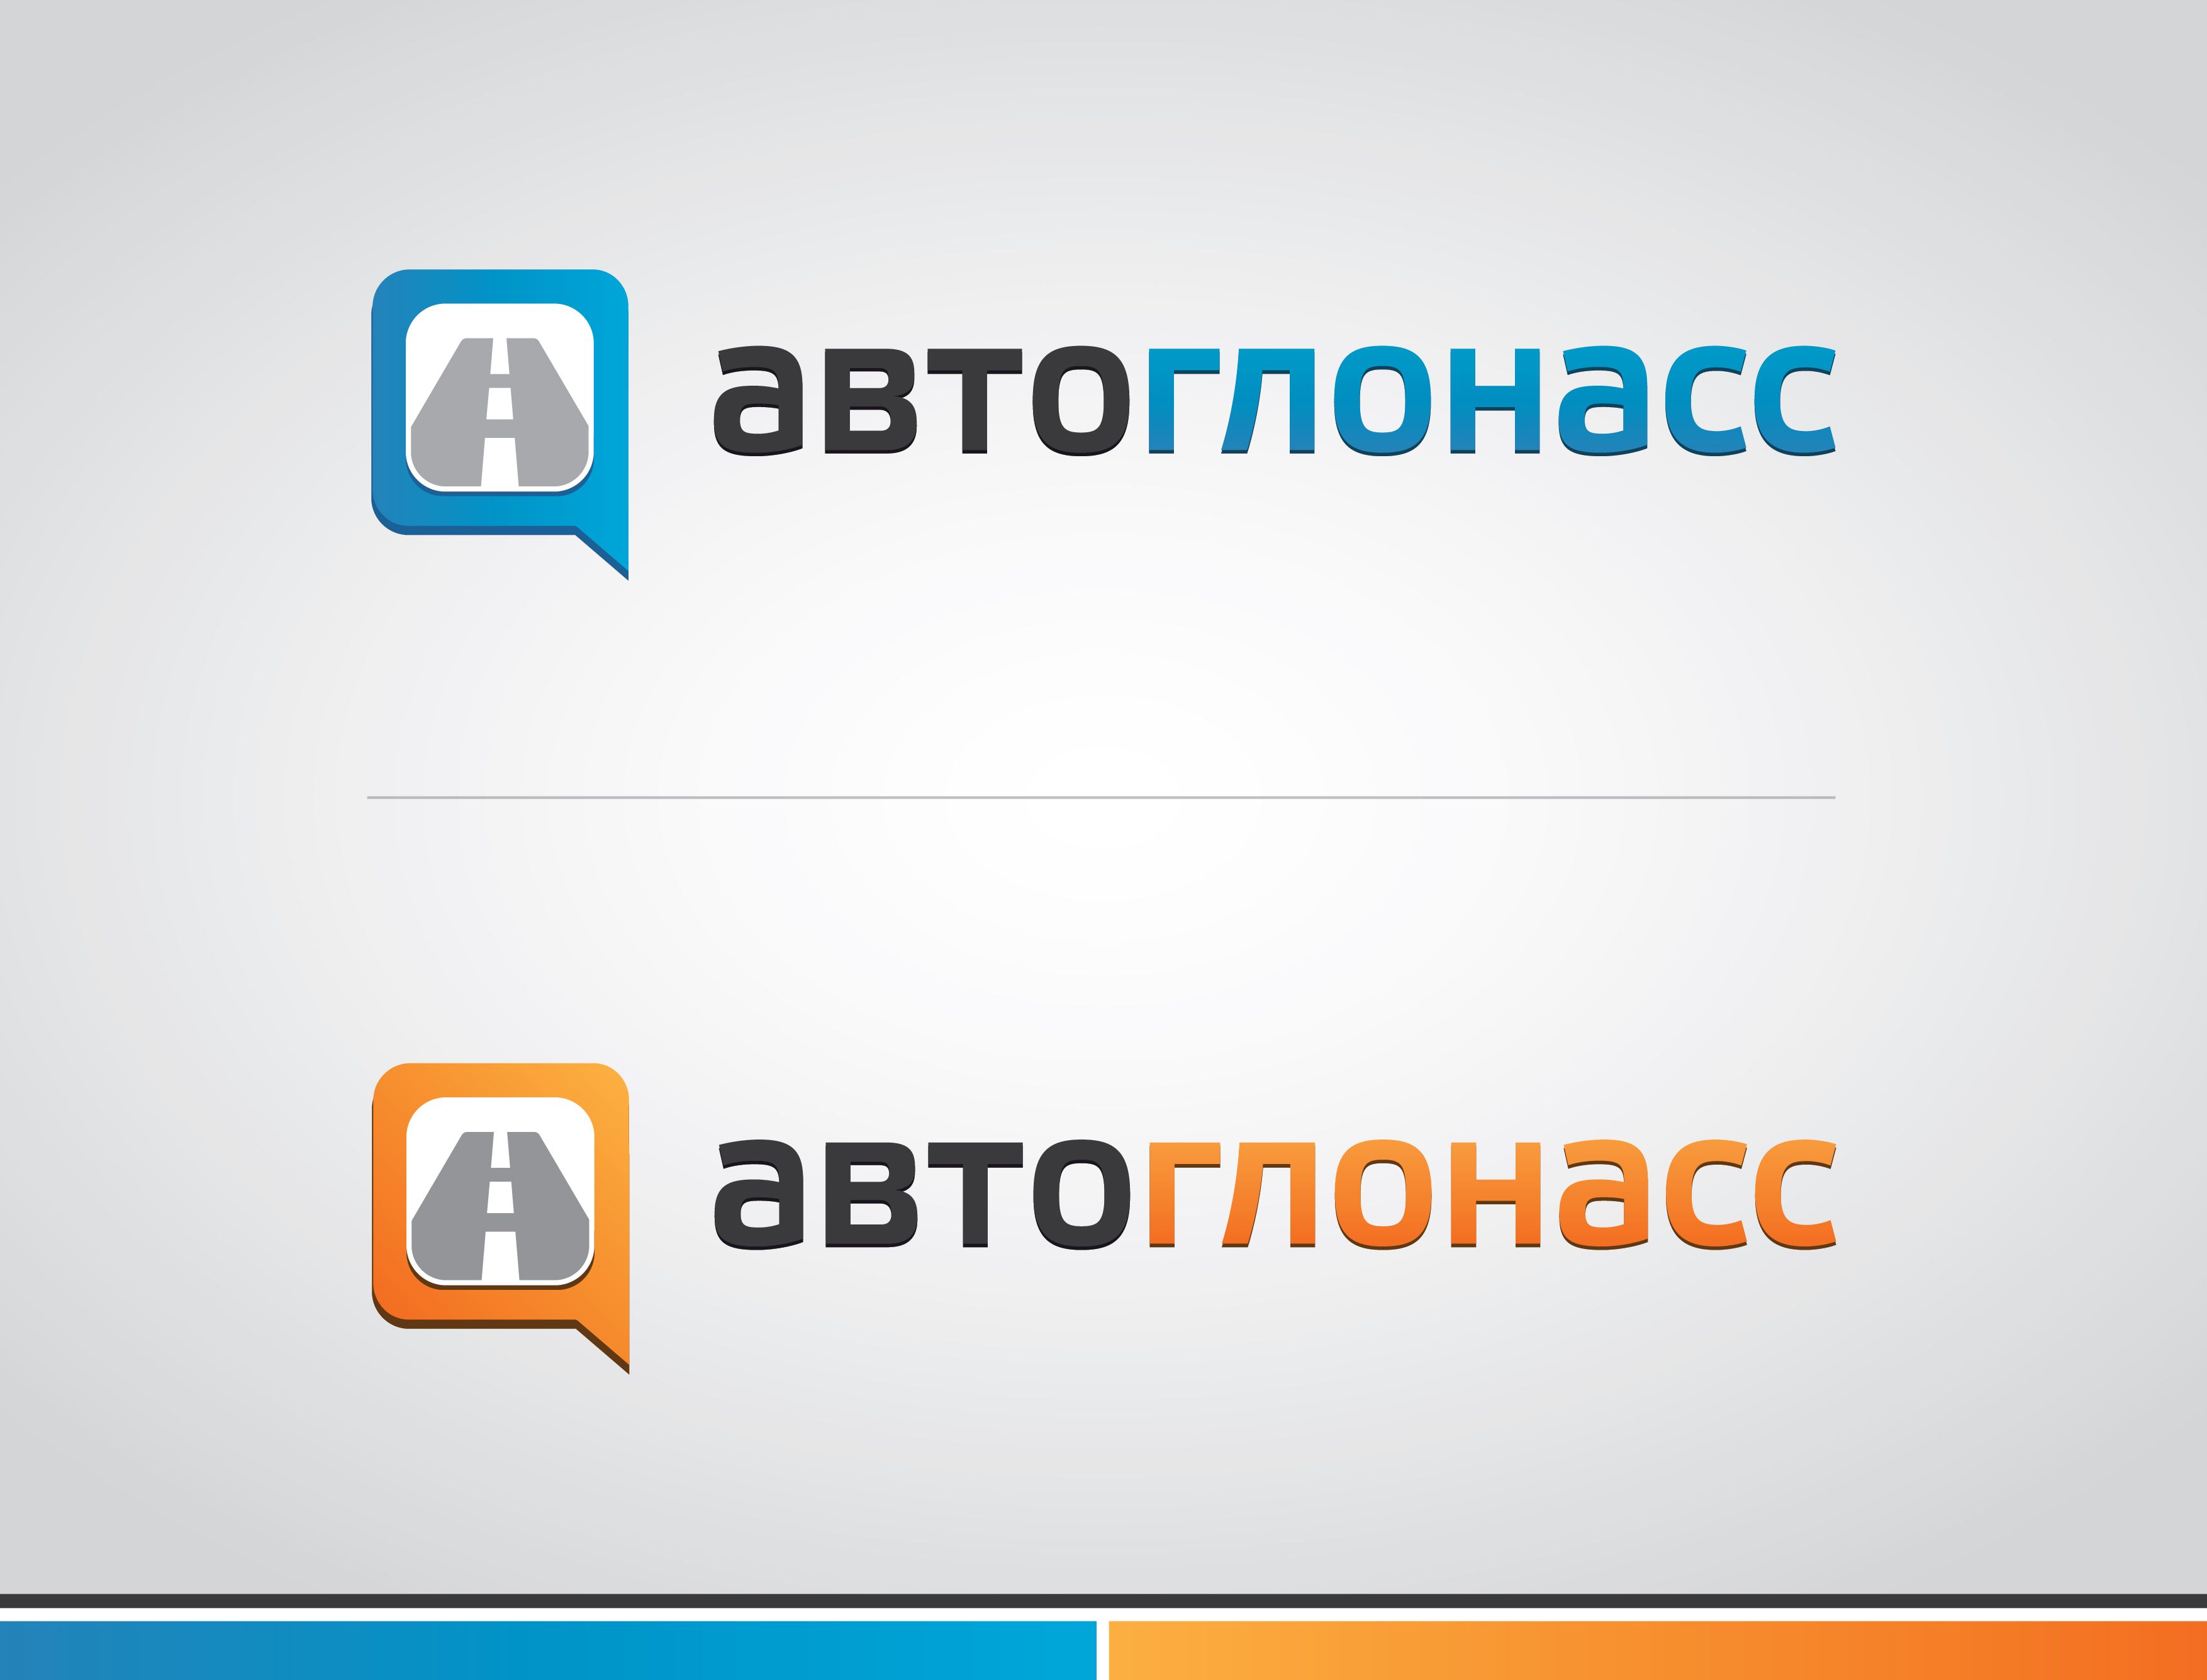 Логотип и фирменный стиль проекта АвтоГЛОНАСС - дизайнер Cammerariy